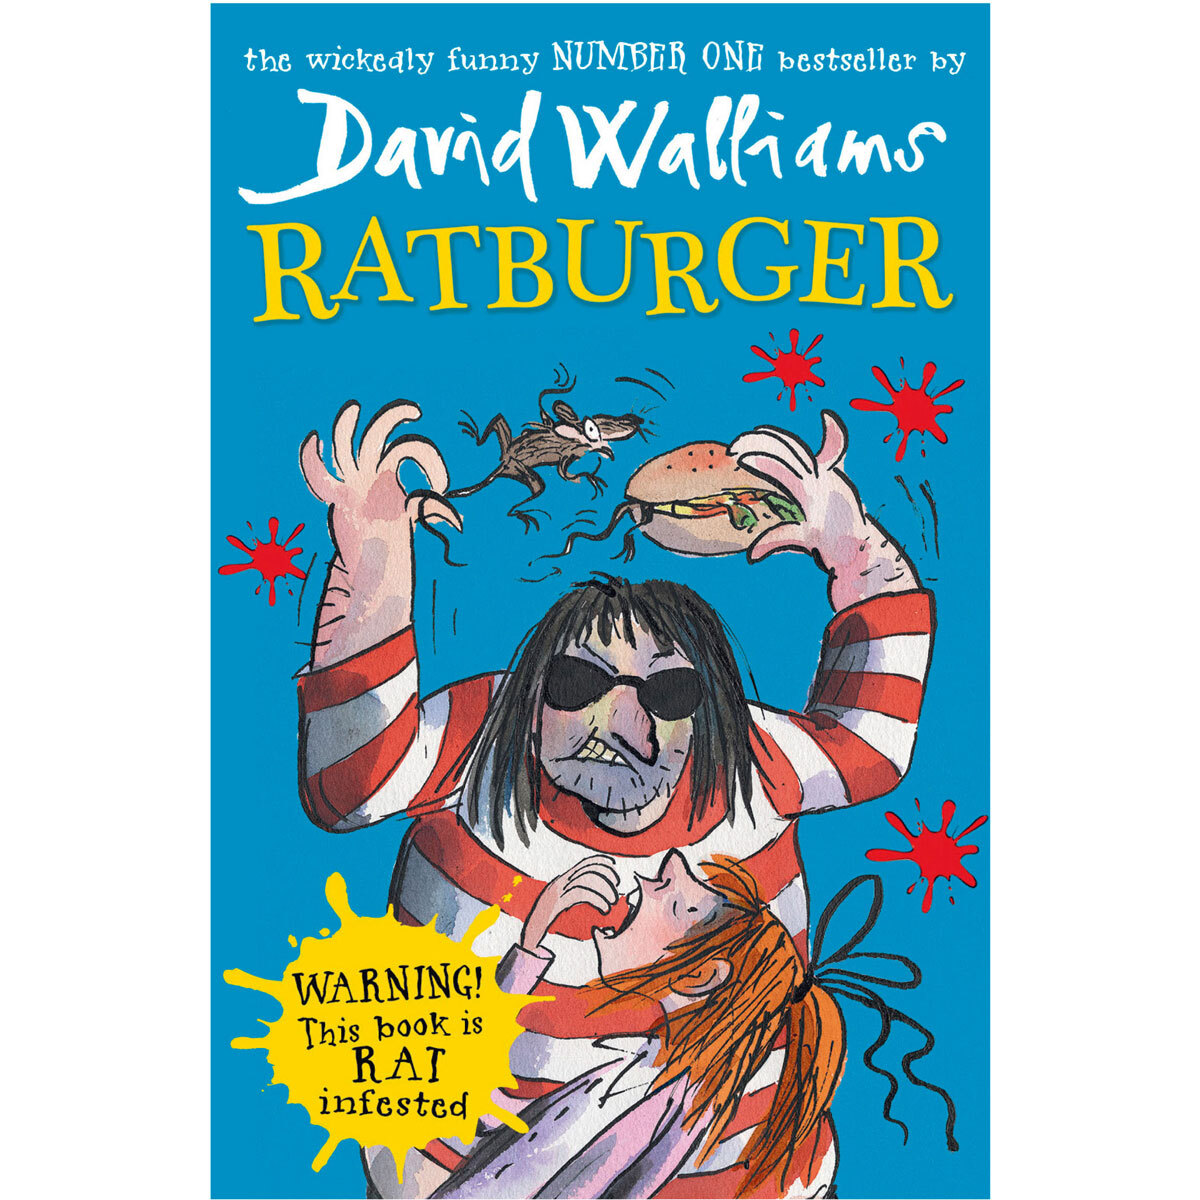 The World of David Walliams 5 Book Boxset (6+ Years)